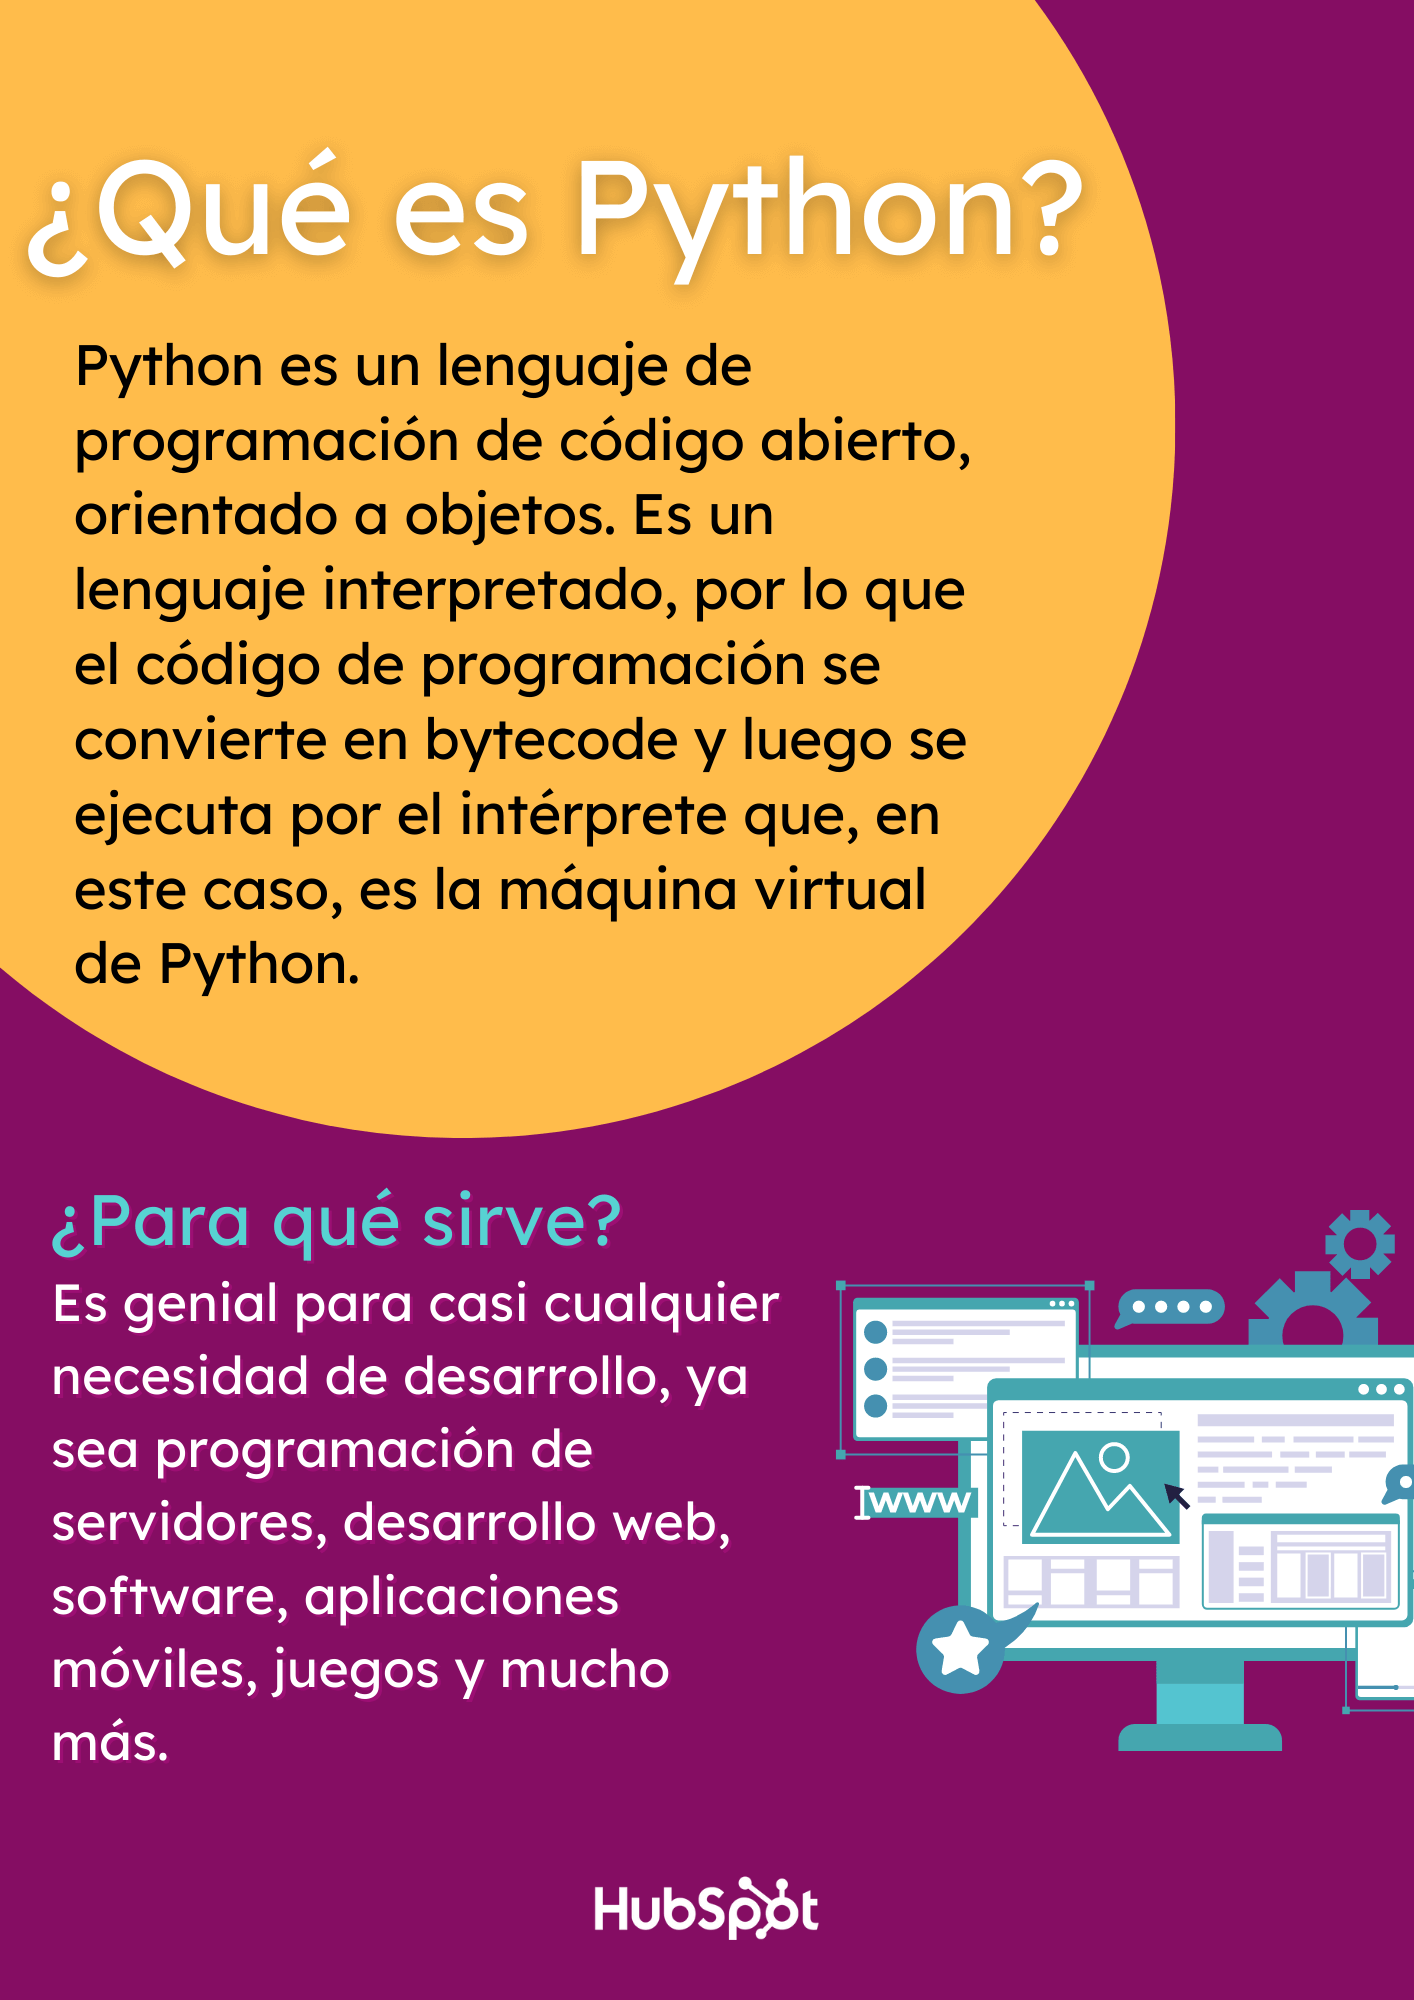 Qué es Python y para qué sirve